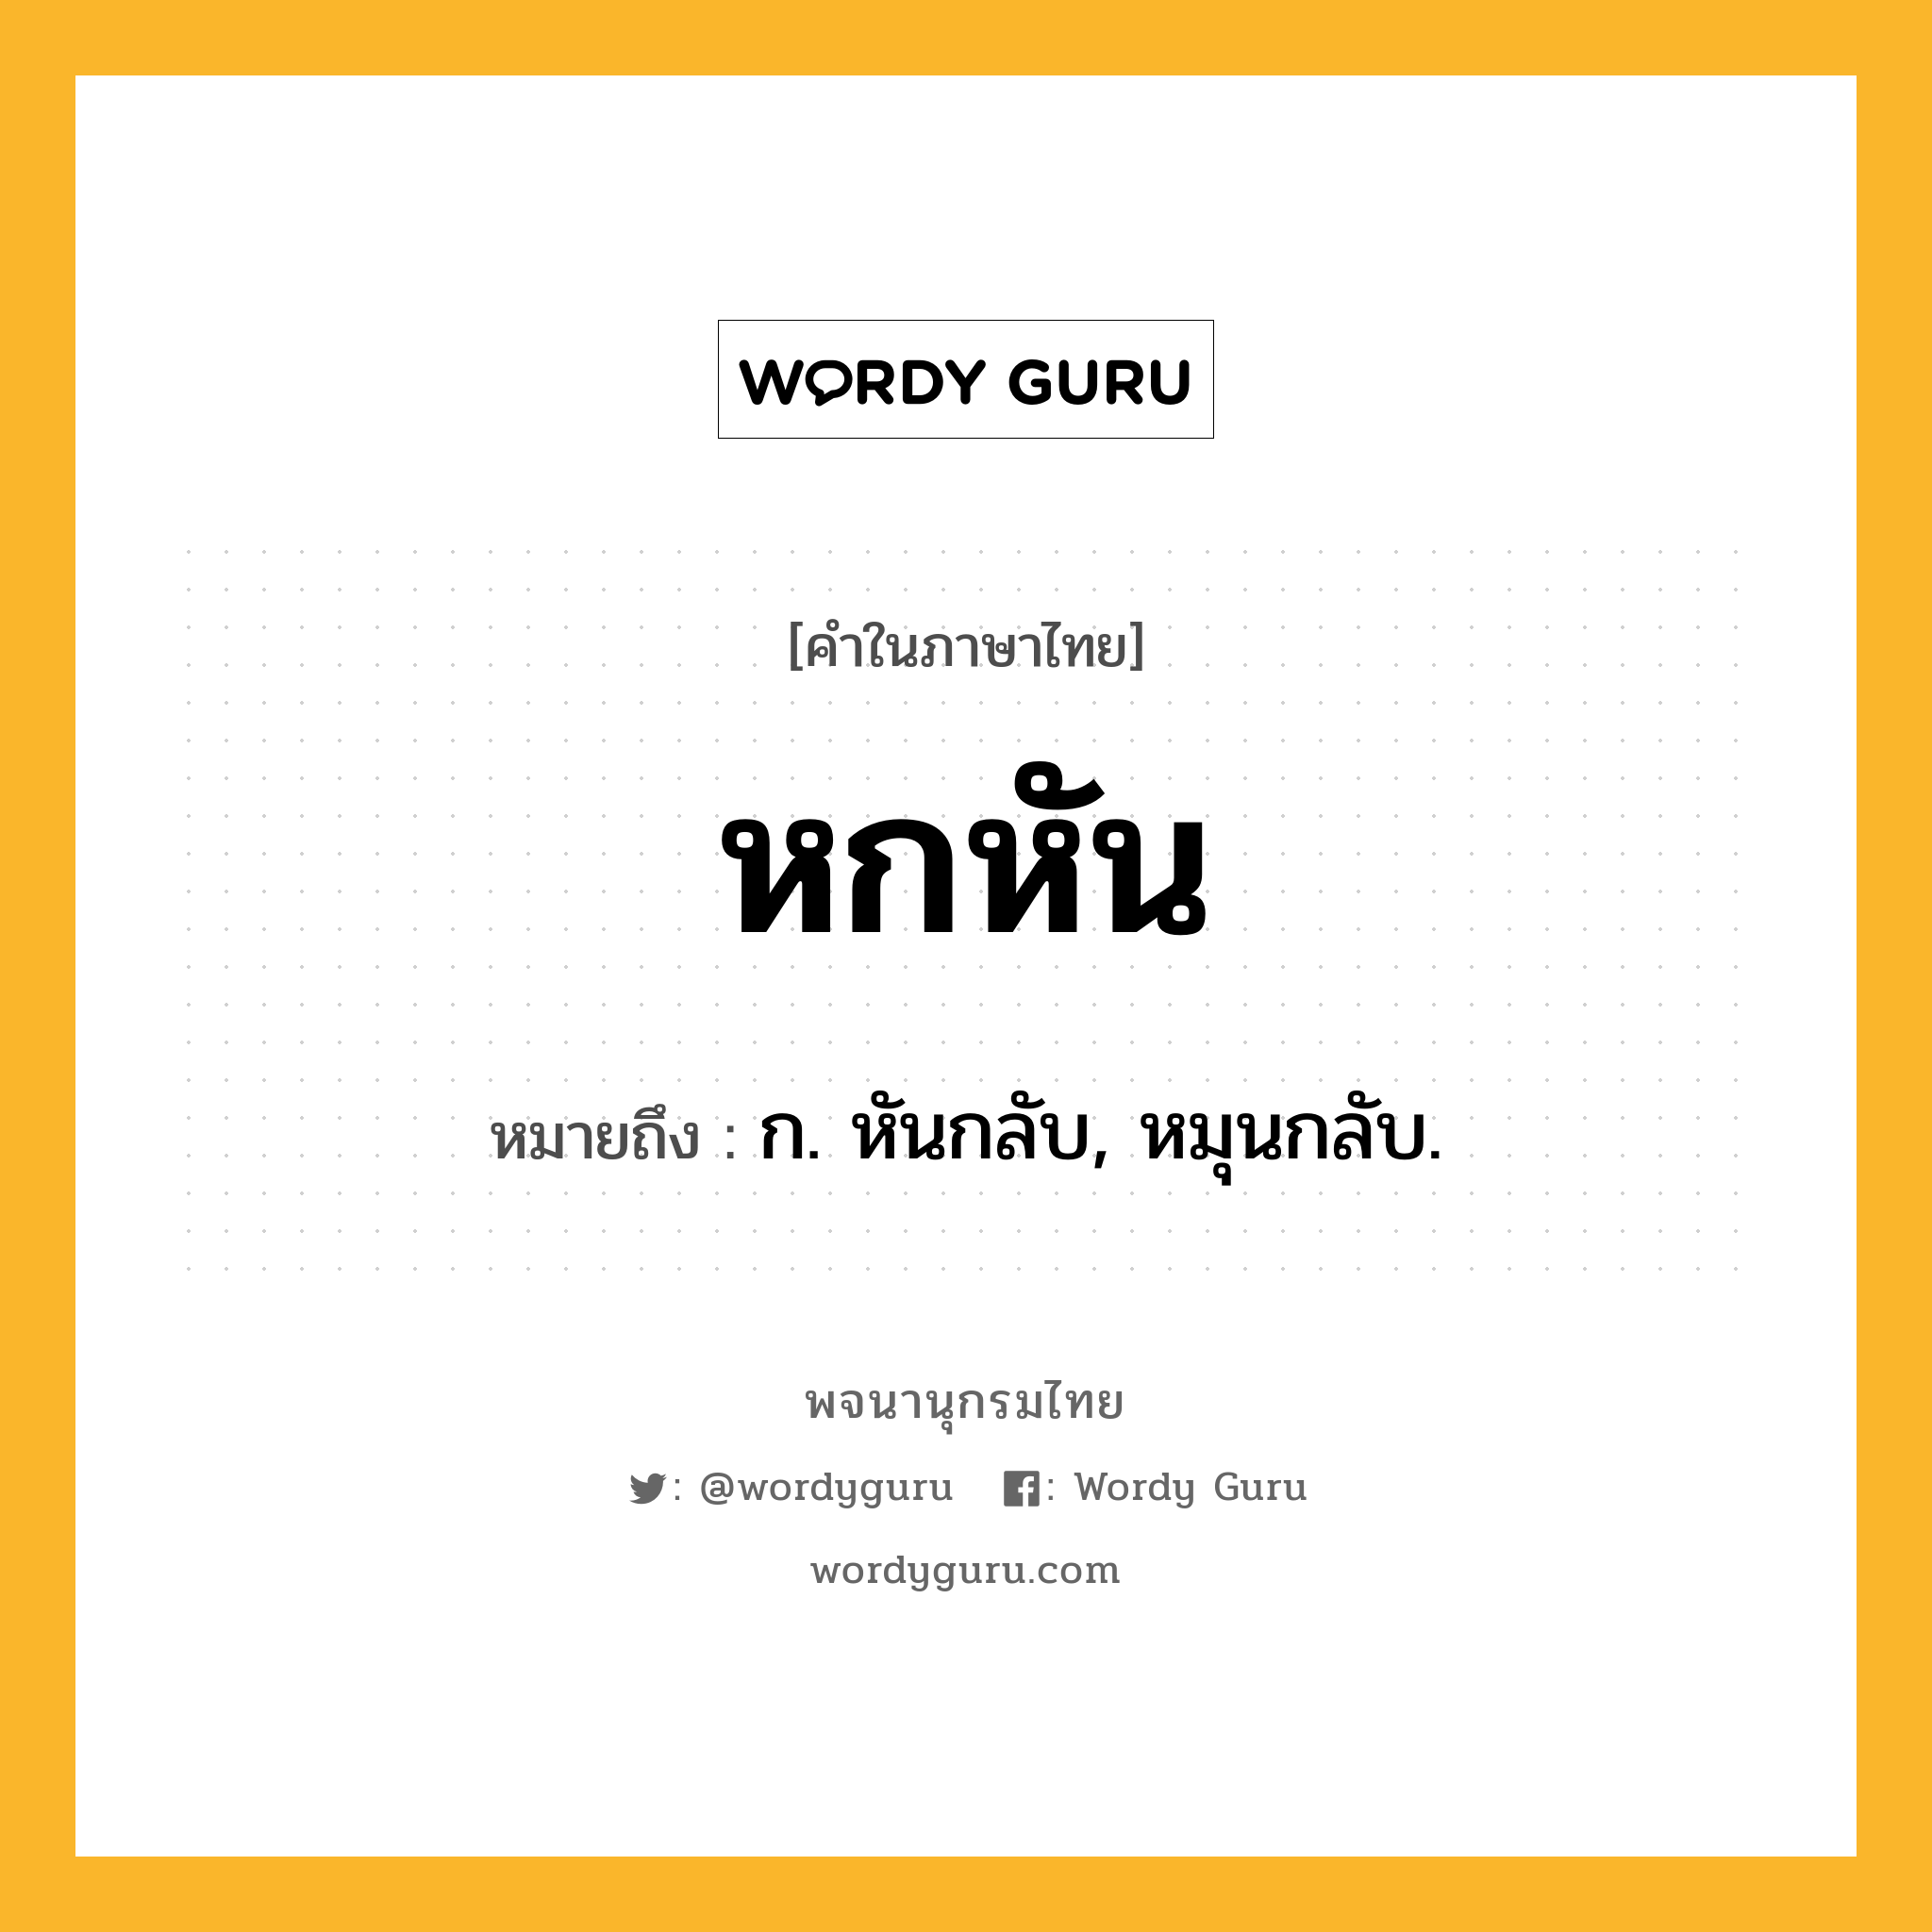 หกหัน ความหมาย หมายถึงอะไร?, คำในภาษาไทย หกหัน หมายถึง ก. หันกลับ, หมุนกลับ.